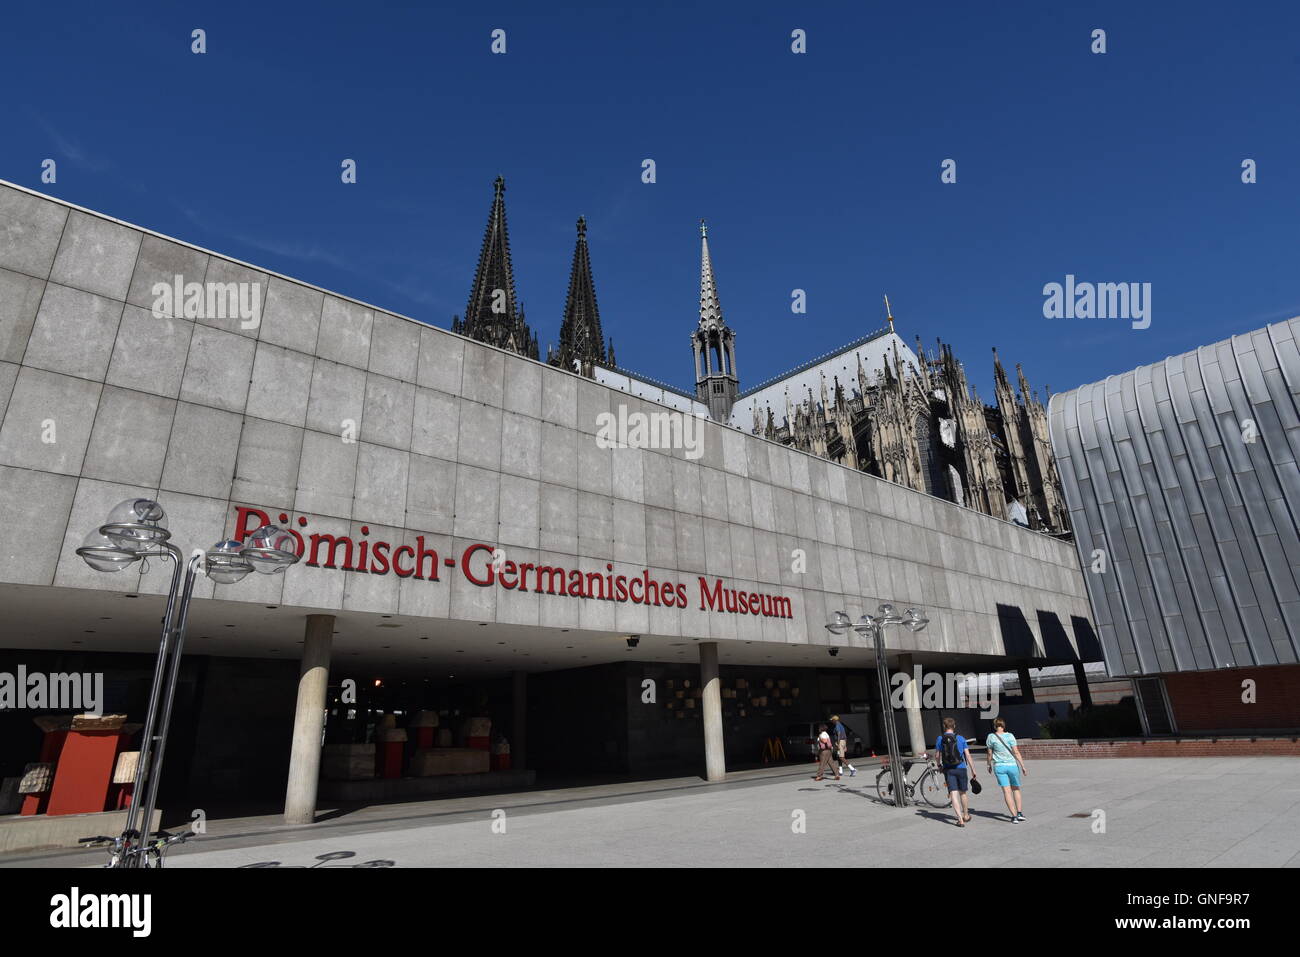 Cologne, Allemagne. Août 26, 2016. Le musée romain-germanique en face de la cathédrale de Cologne à Cologne, Allemagne, 26 août 2016. Photo : Horst Galuschka - AUCUN FIL - SERVICE/dpa/Alamy Live News Banque D'Images